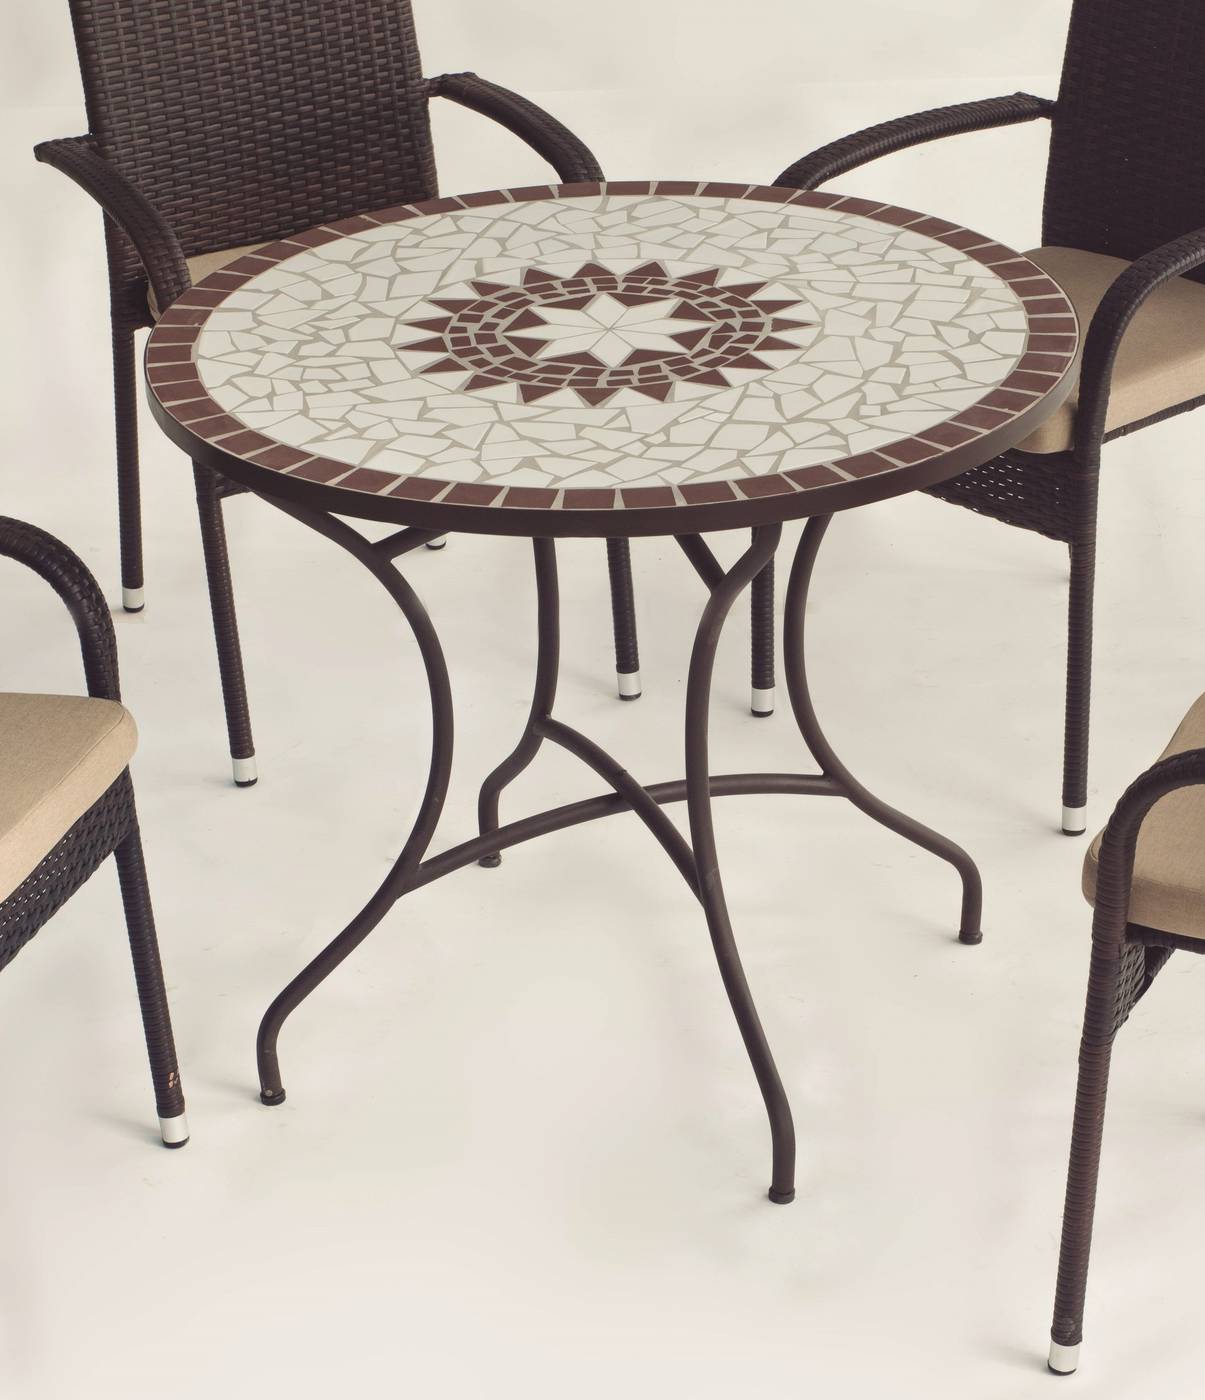 Conjunto Mosaico Estela90-Shifa - Conjunto de forja color bronce: mesa con tablero mosaico de 90 cm + 4 sillones con cojines asiento.